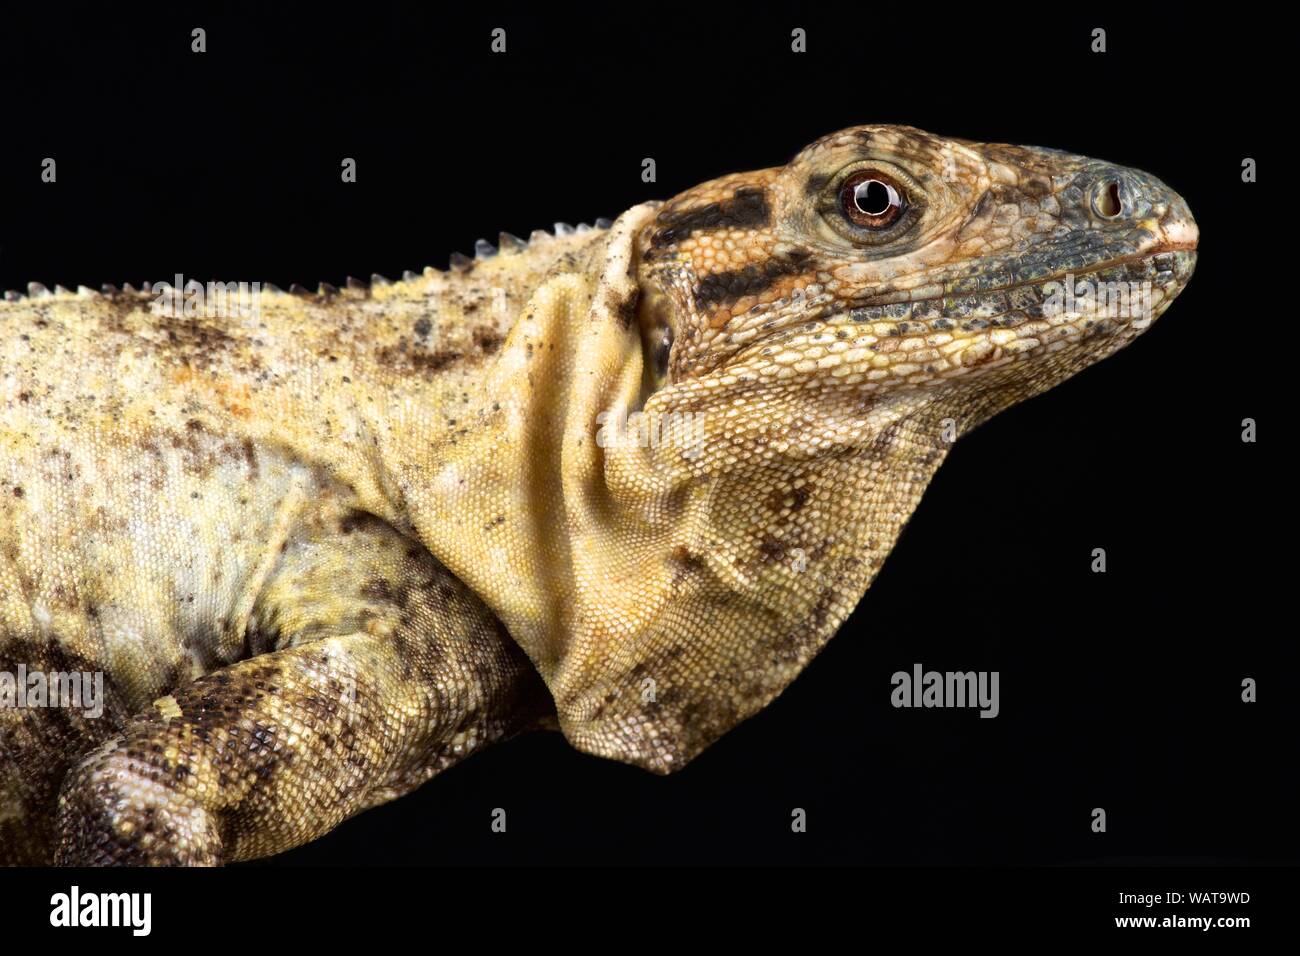 Gulf spiny-tailed Iguana (Ctenosaura acanthura) Stock Photo